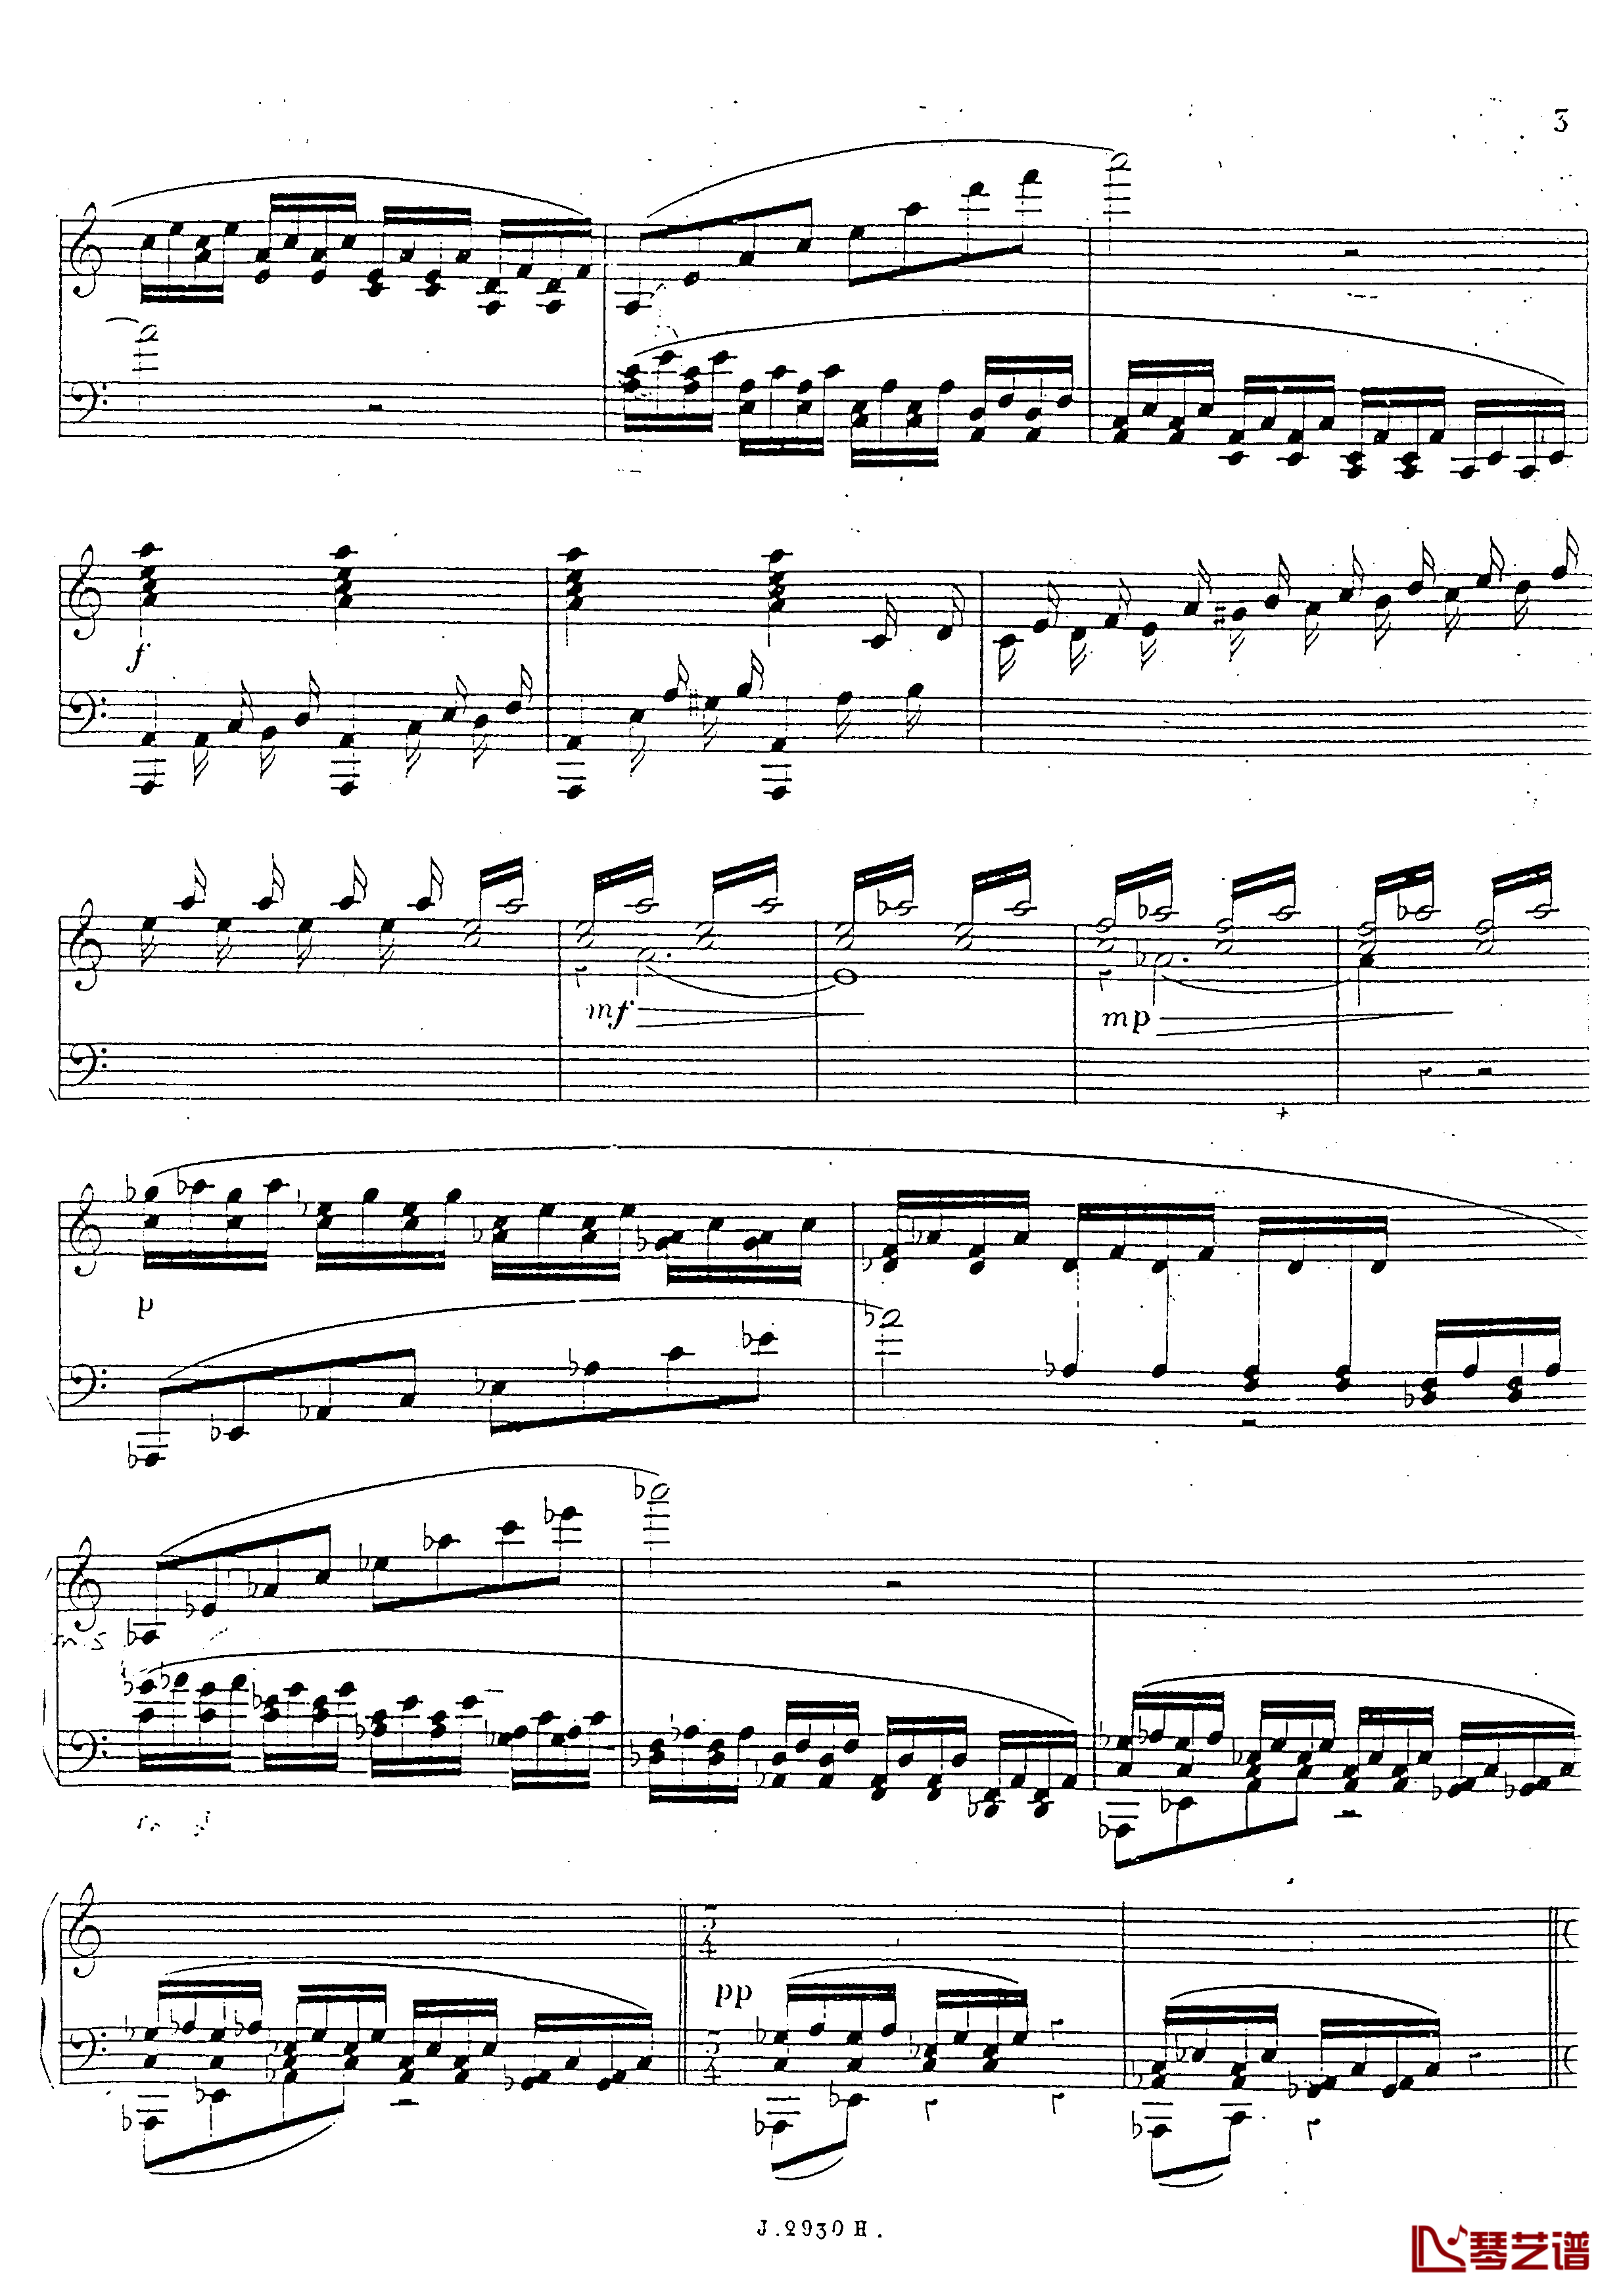 a小调第四钢琴奏鸣曲钢琴谱-安东 鲁宾斯坦- Op.1004